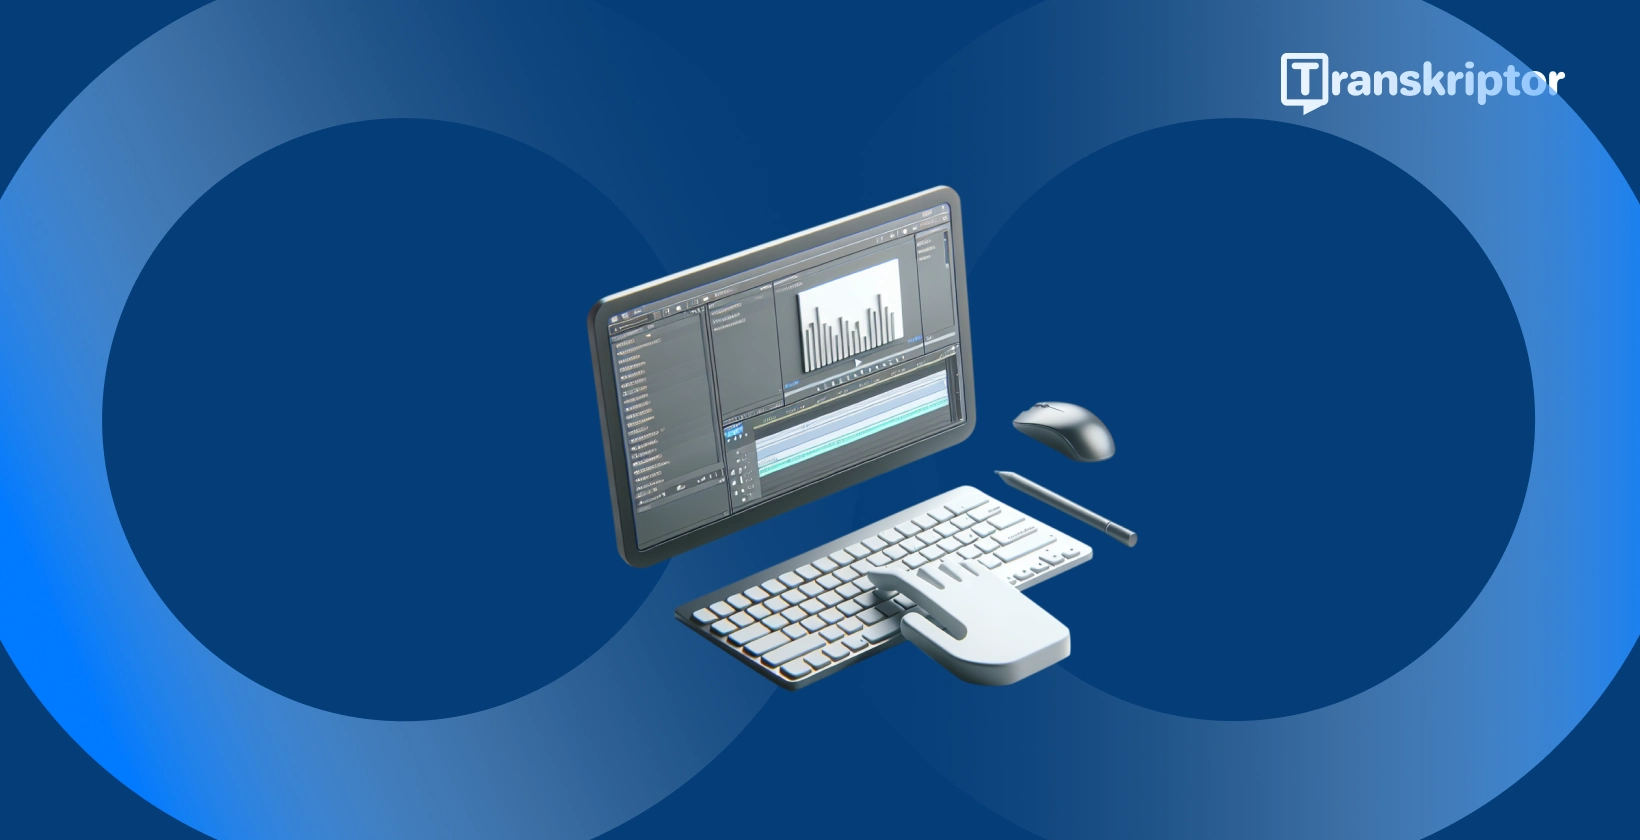 Shotcut perisian penyuntingan video pada monitor dengan bentuk gelombang dan alat teks, untuk menambah kapsyen dan tajuk pada video.